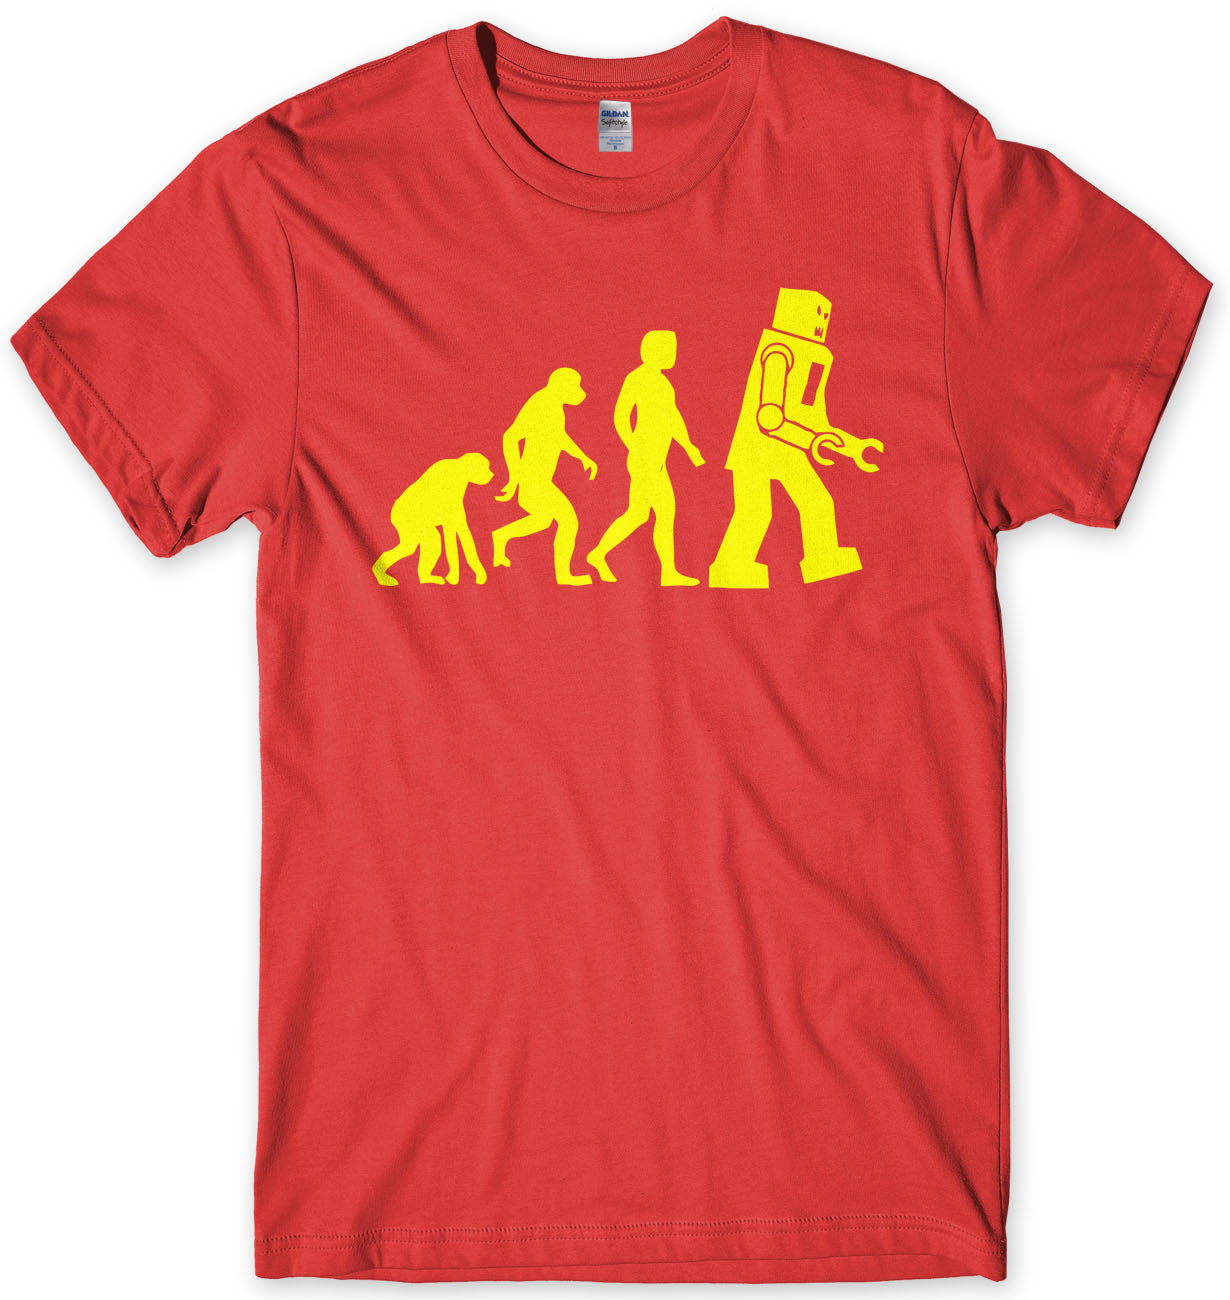 Evolution Of Robot Sheldon Cooper Inspired T-Shirt